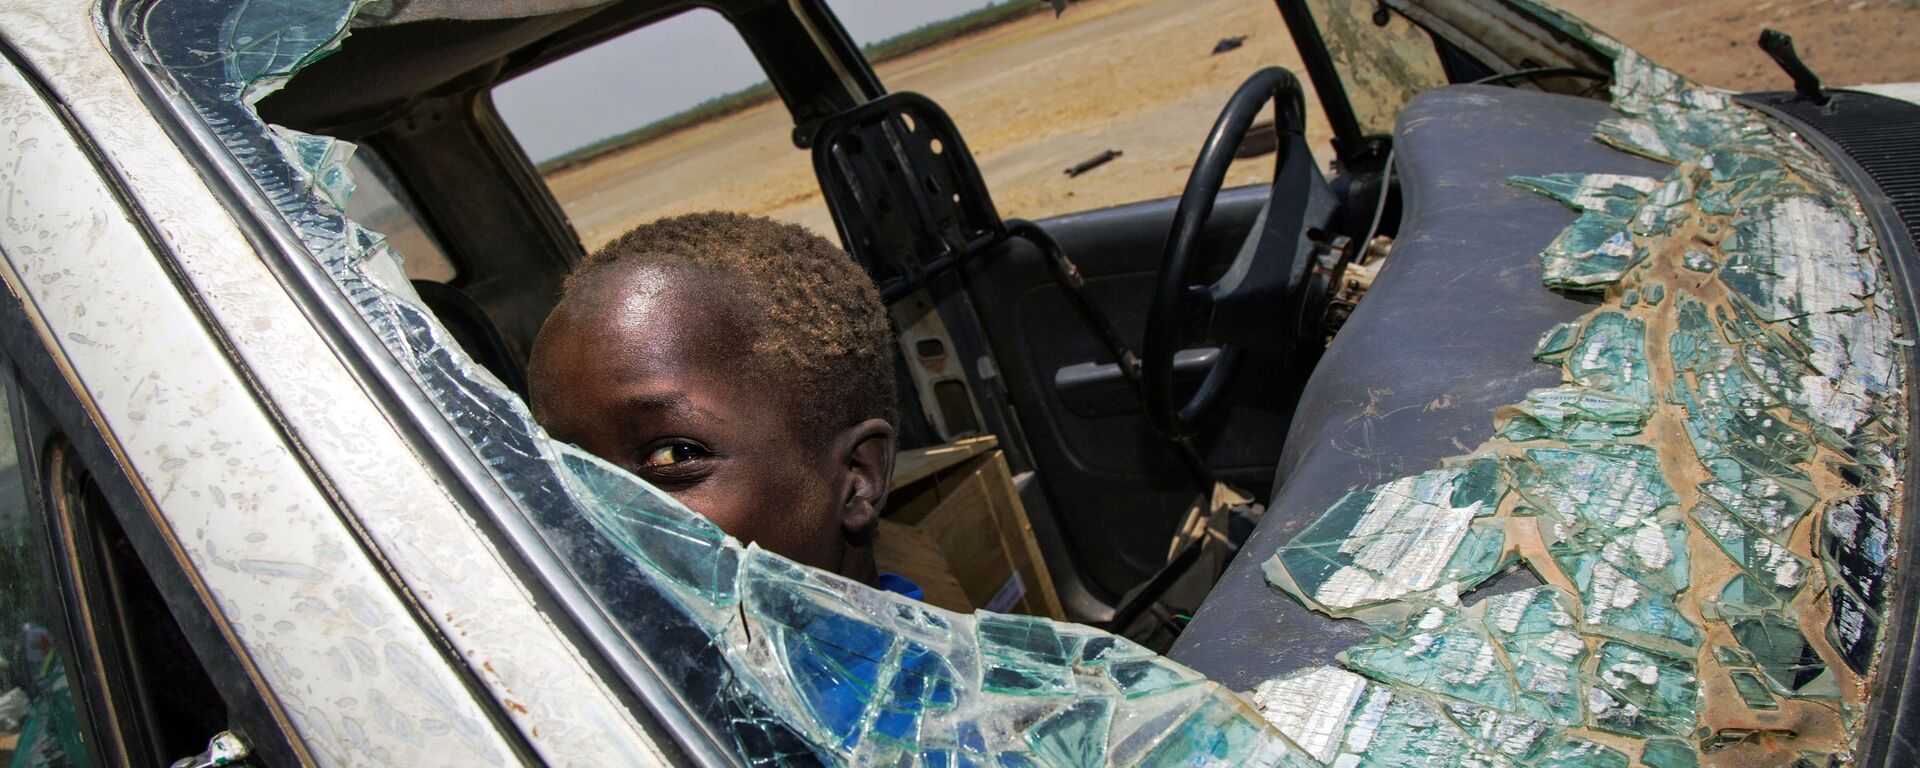 طفل داخل سيارة محطمة نتيجة اشتباكات دارت القوات المسلحة في جنوب السودان، 11 أبريل/ نيسان 2017 - سبوتنيك عربي, 1920, 22.10.2022